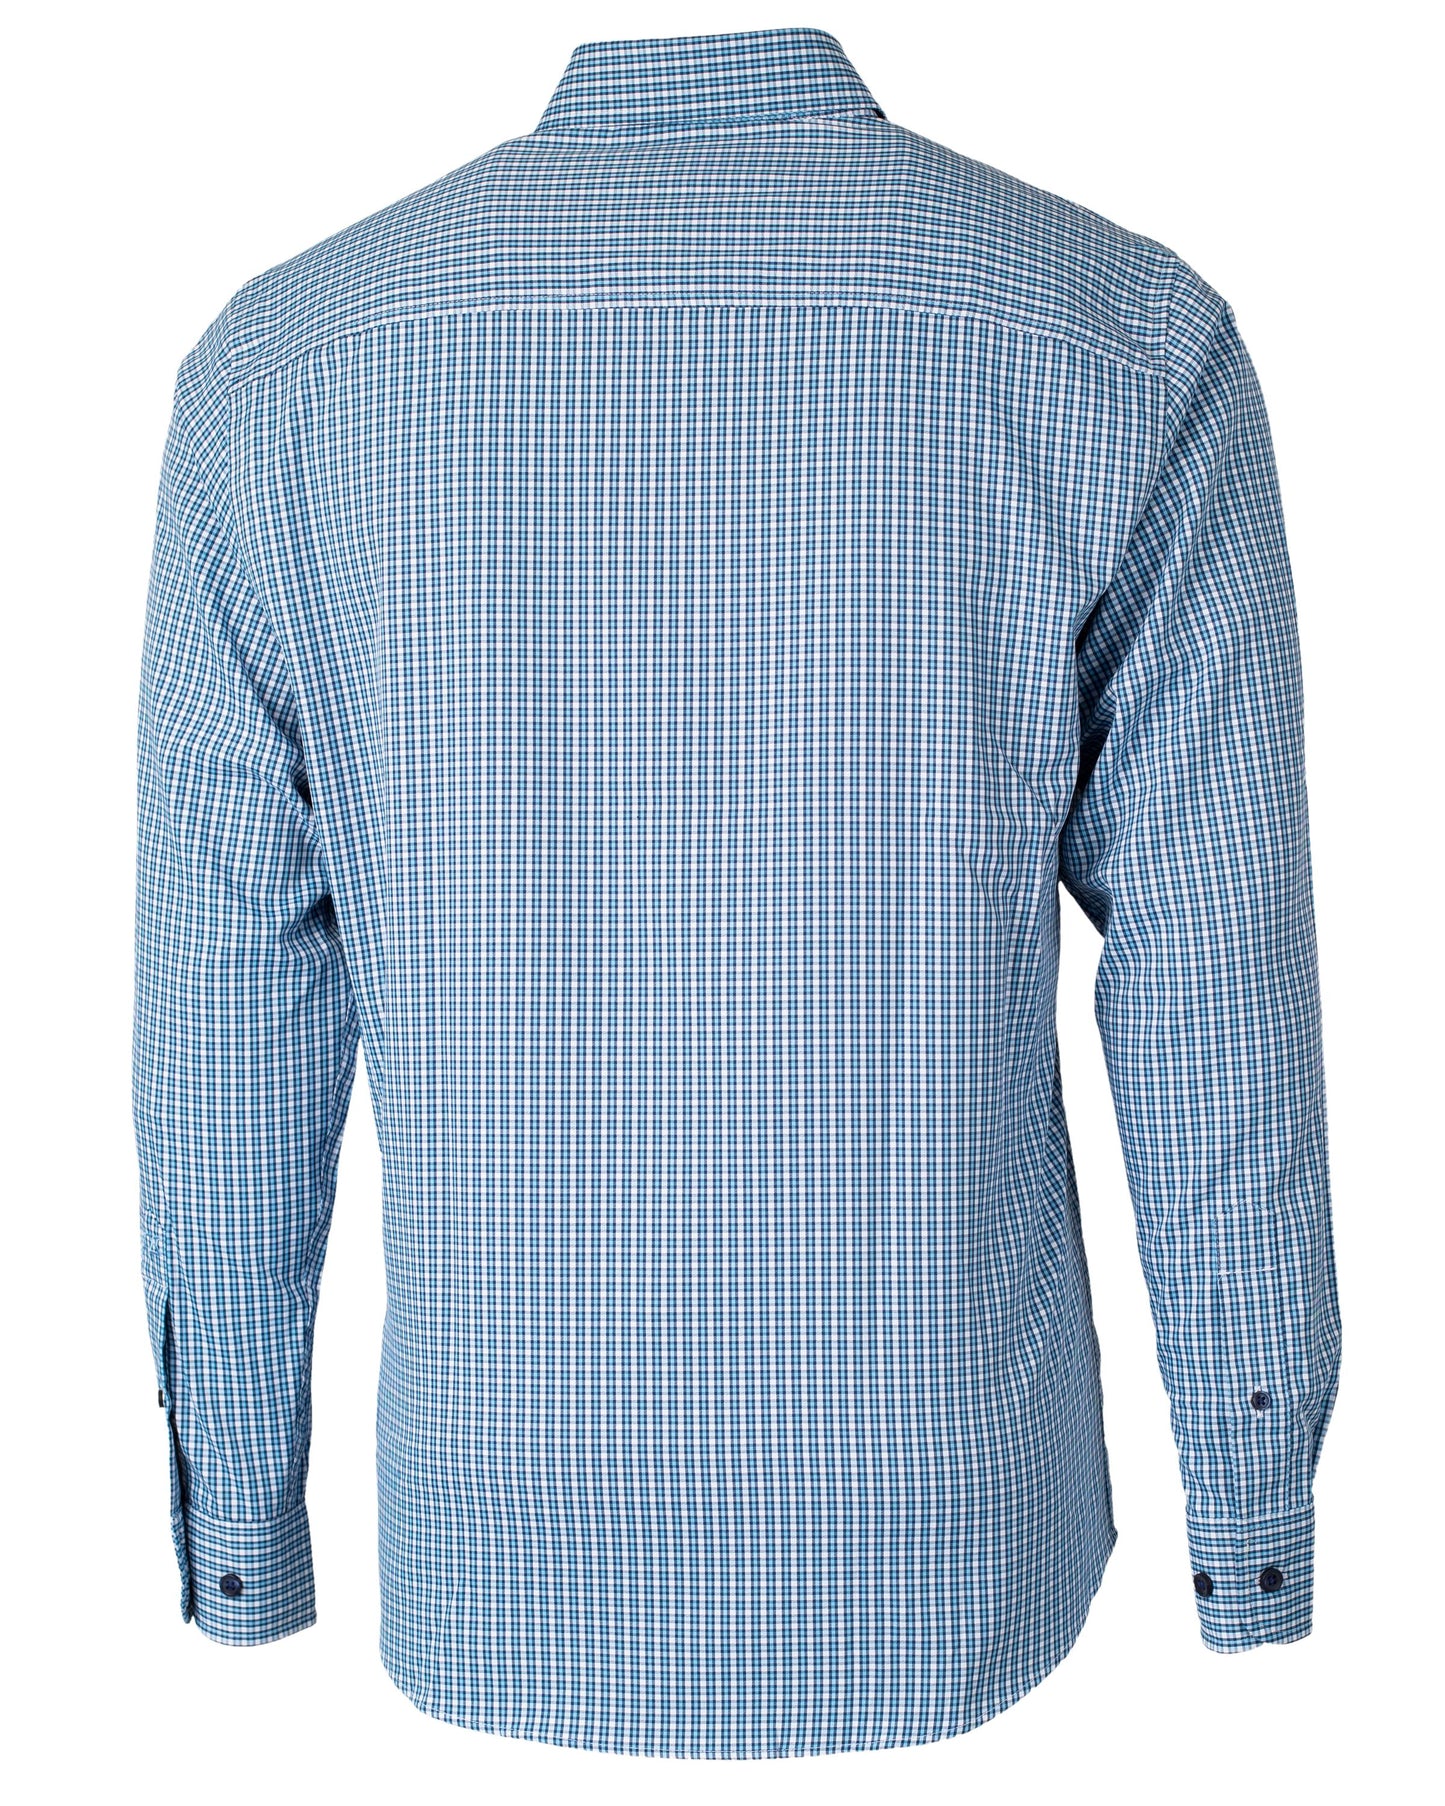 Cutter & Buck Versatech Multi Check Stretch Dress Shirt Atlas Blue